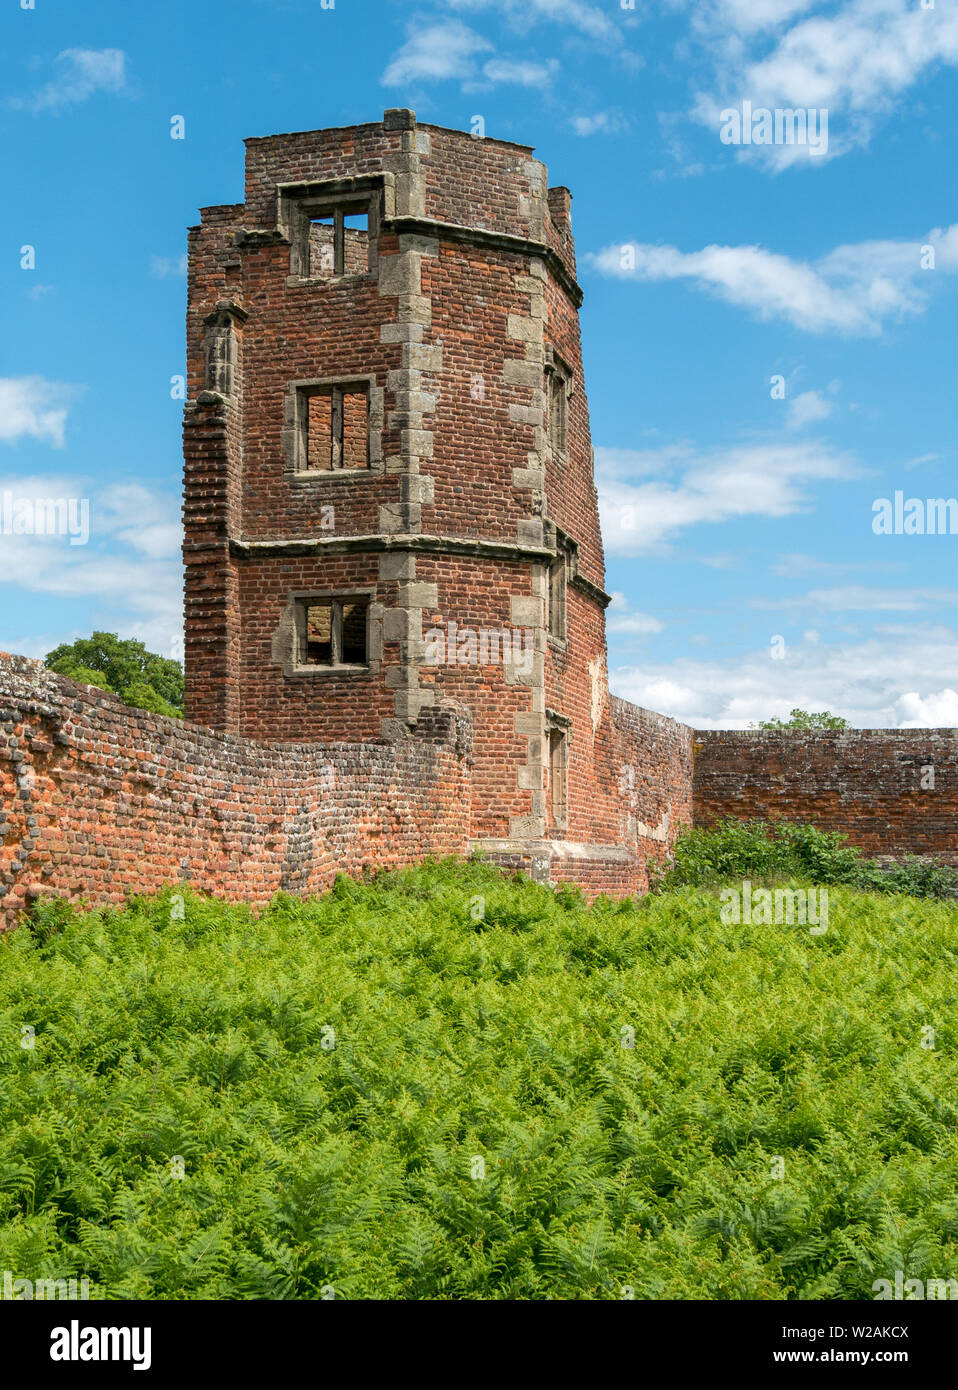 Il vecchio muro di mattoni e una torre in rovina, Lady Jane Grey's House, Glenfield Lodge Park, Leicestershire, England, Regno Unito Foto Stock